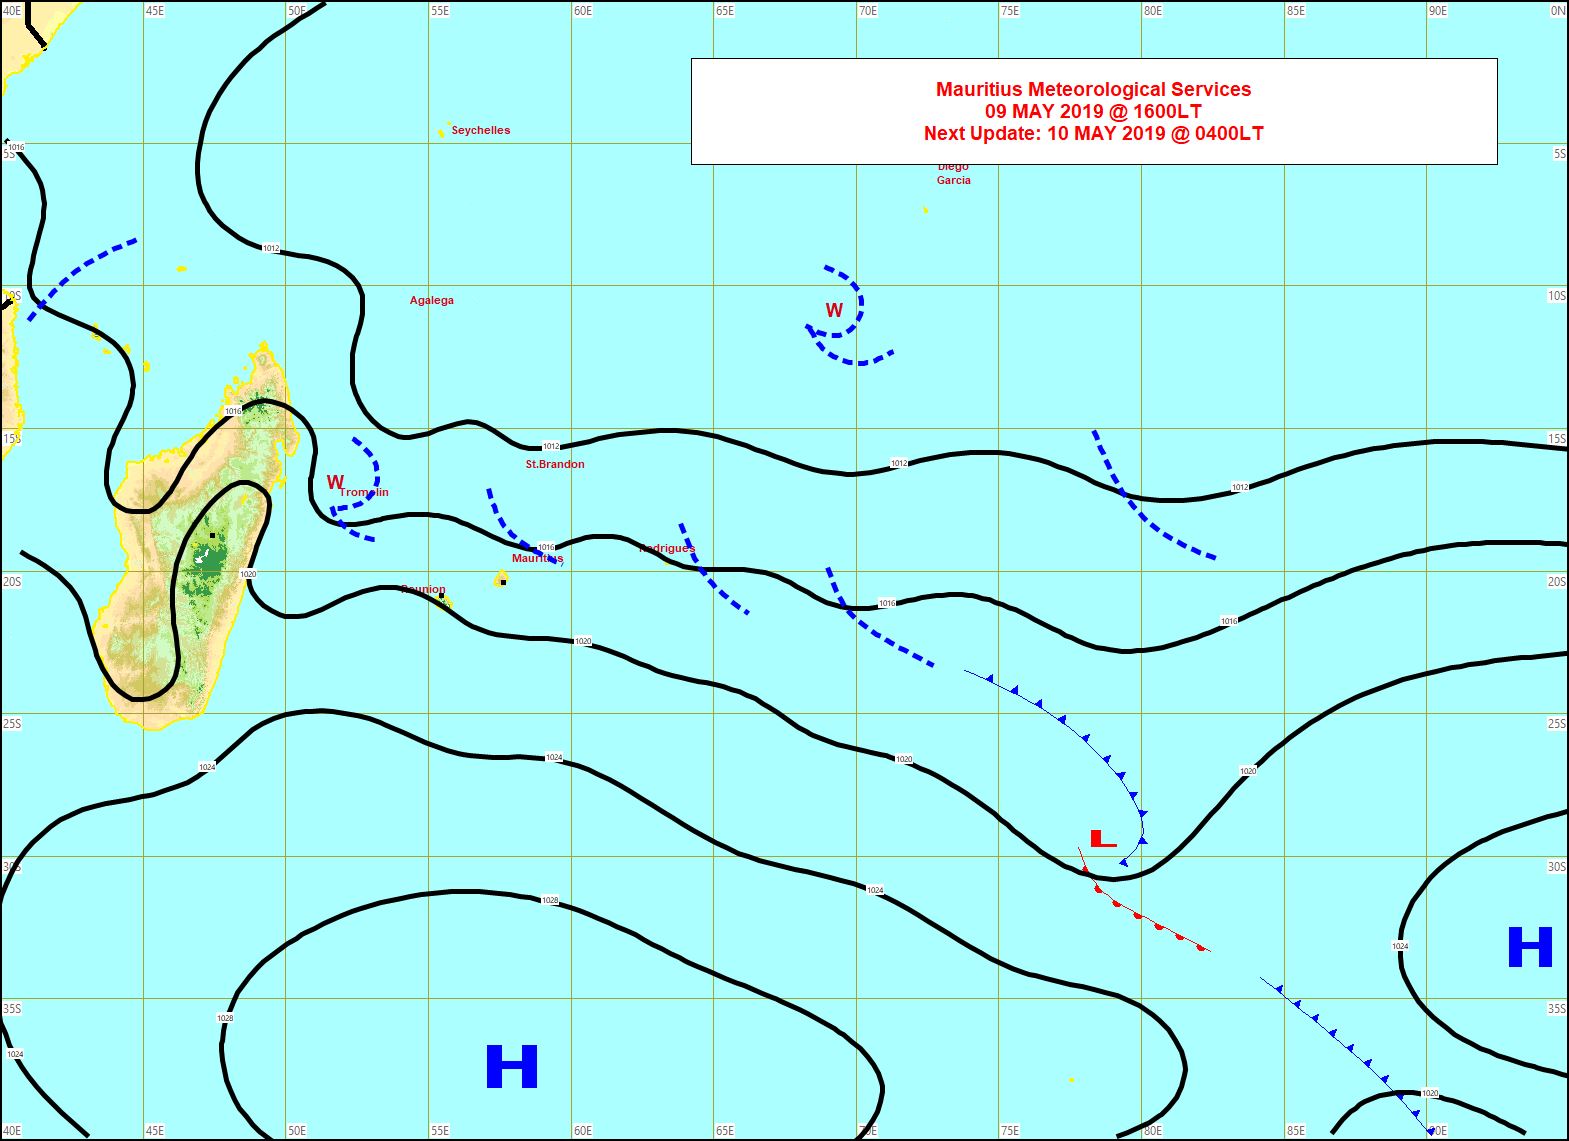 L'anticyclone est positionné au sud des Mascareignes. Carte MMS de 16h.